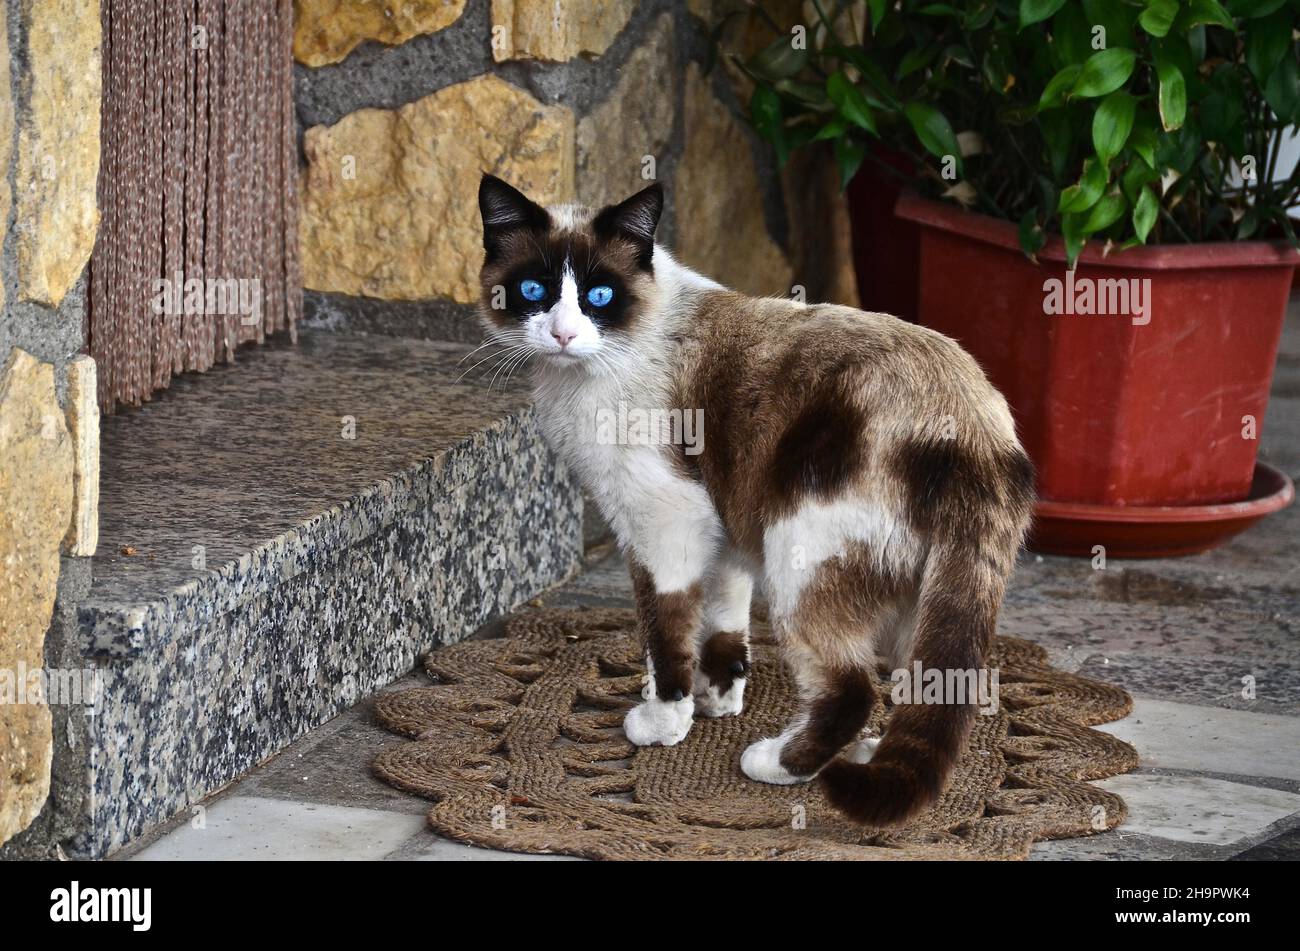 Gatto Siamese misto con occhi blu davanti all'ingresso della casa, gatto in piedi sul tappetino guardando la macchina fotografica, gatto domestico, Spagna Foto Stock